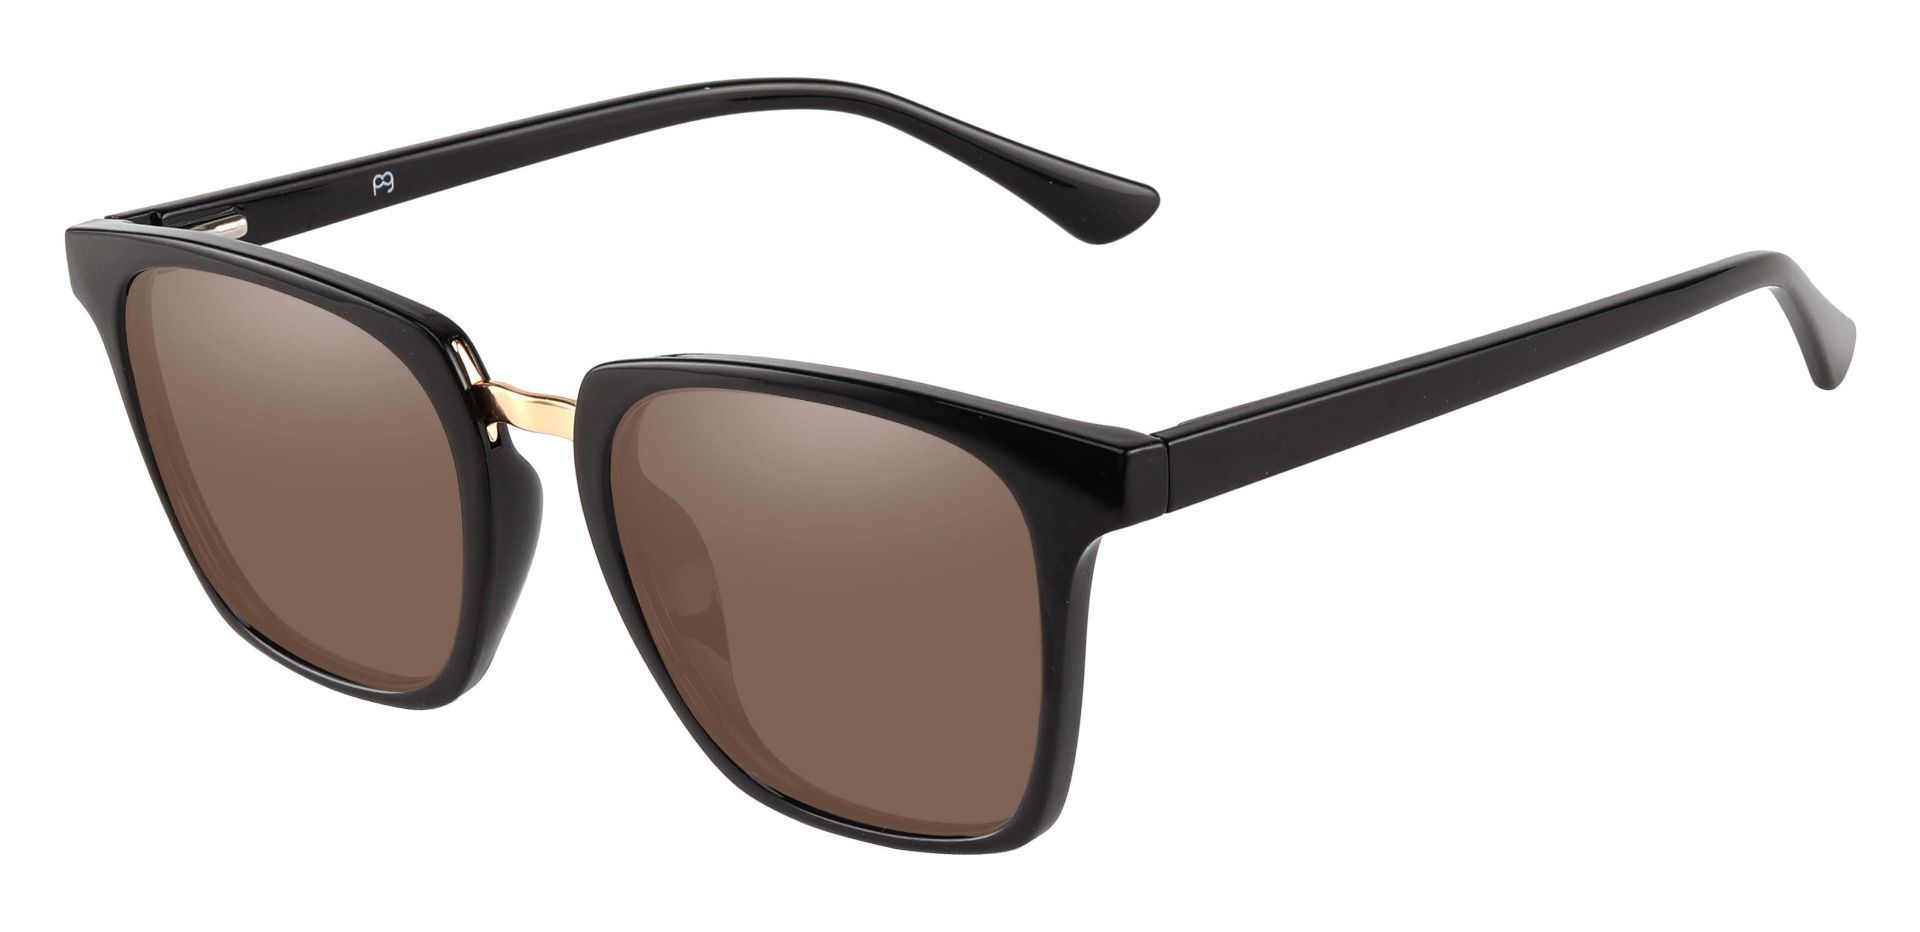 Delta Square Prescription Sunglasses - Black Frame With Brown Lenses